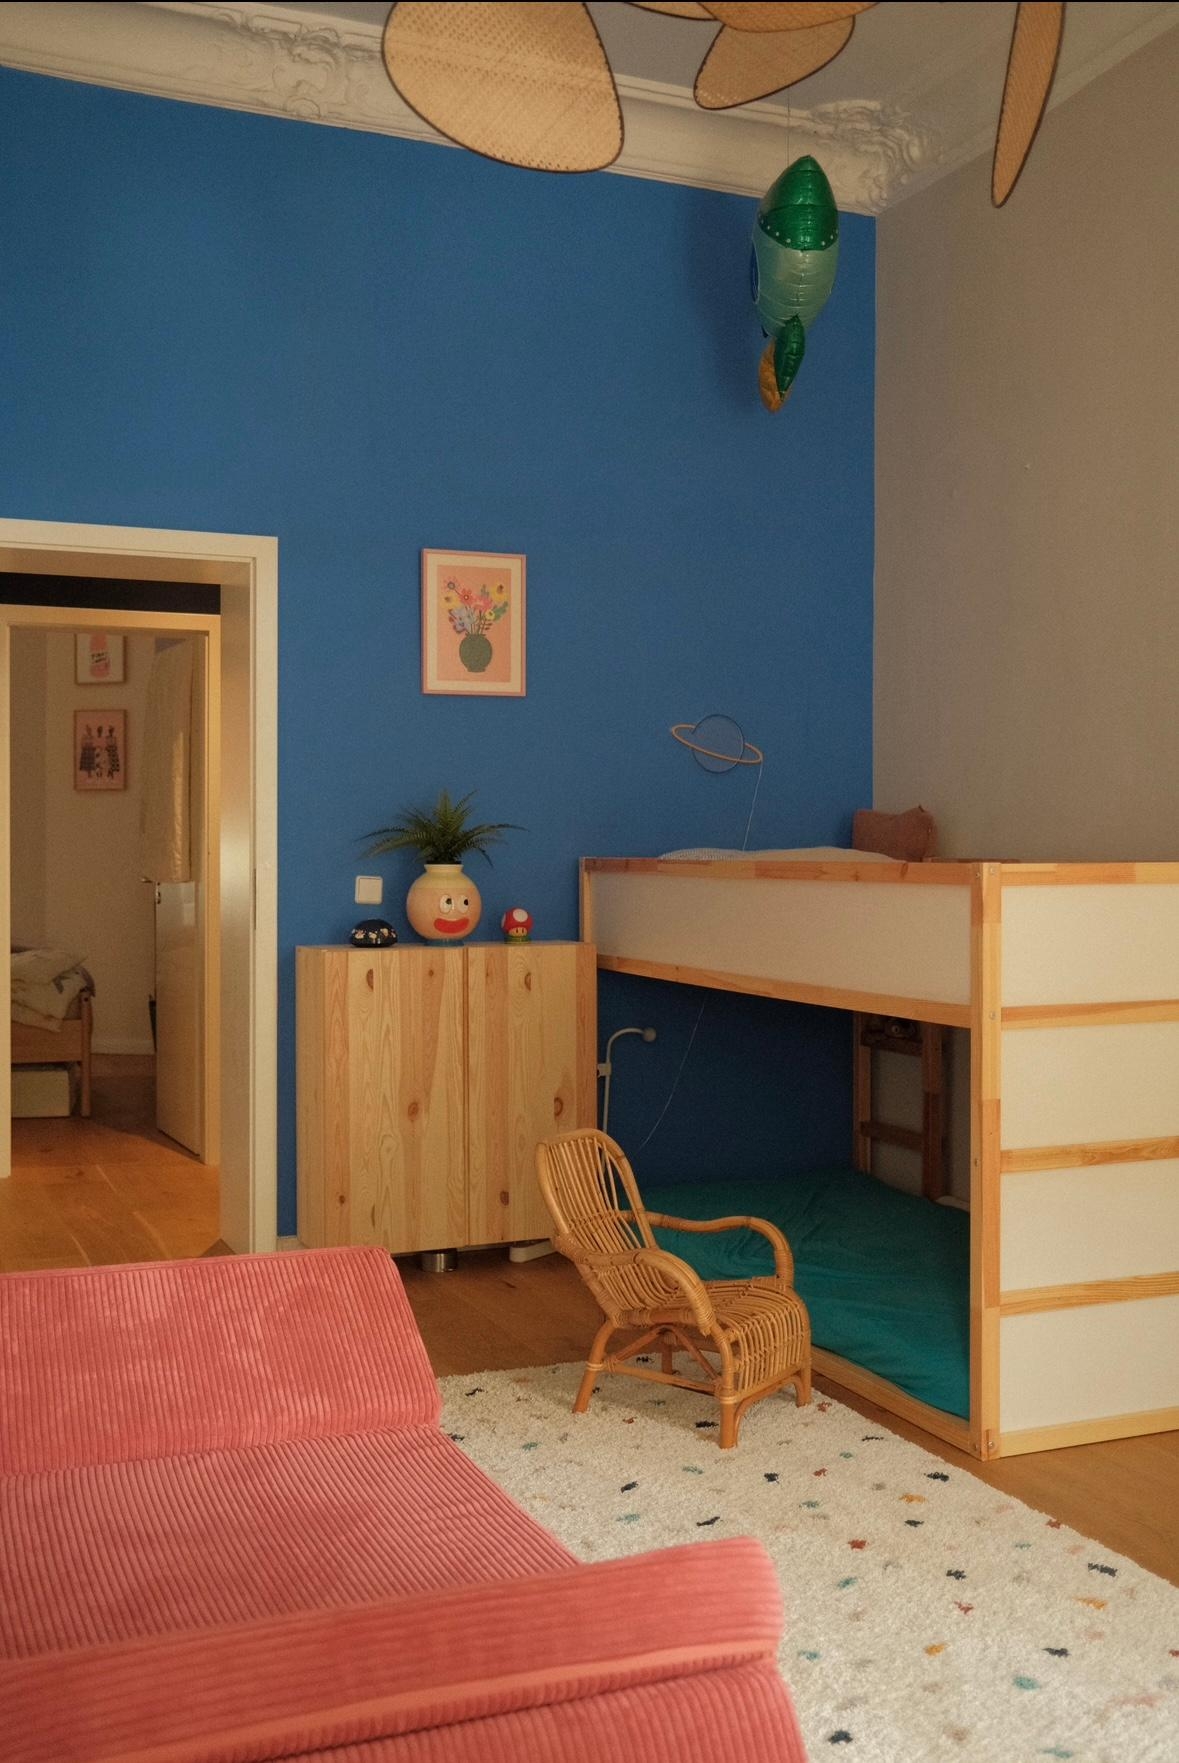 #kinderzimmer #altbauwohnung #couchliebt #gemütlich #farbenfroh #interior #blauewand #spielesofa